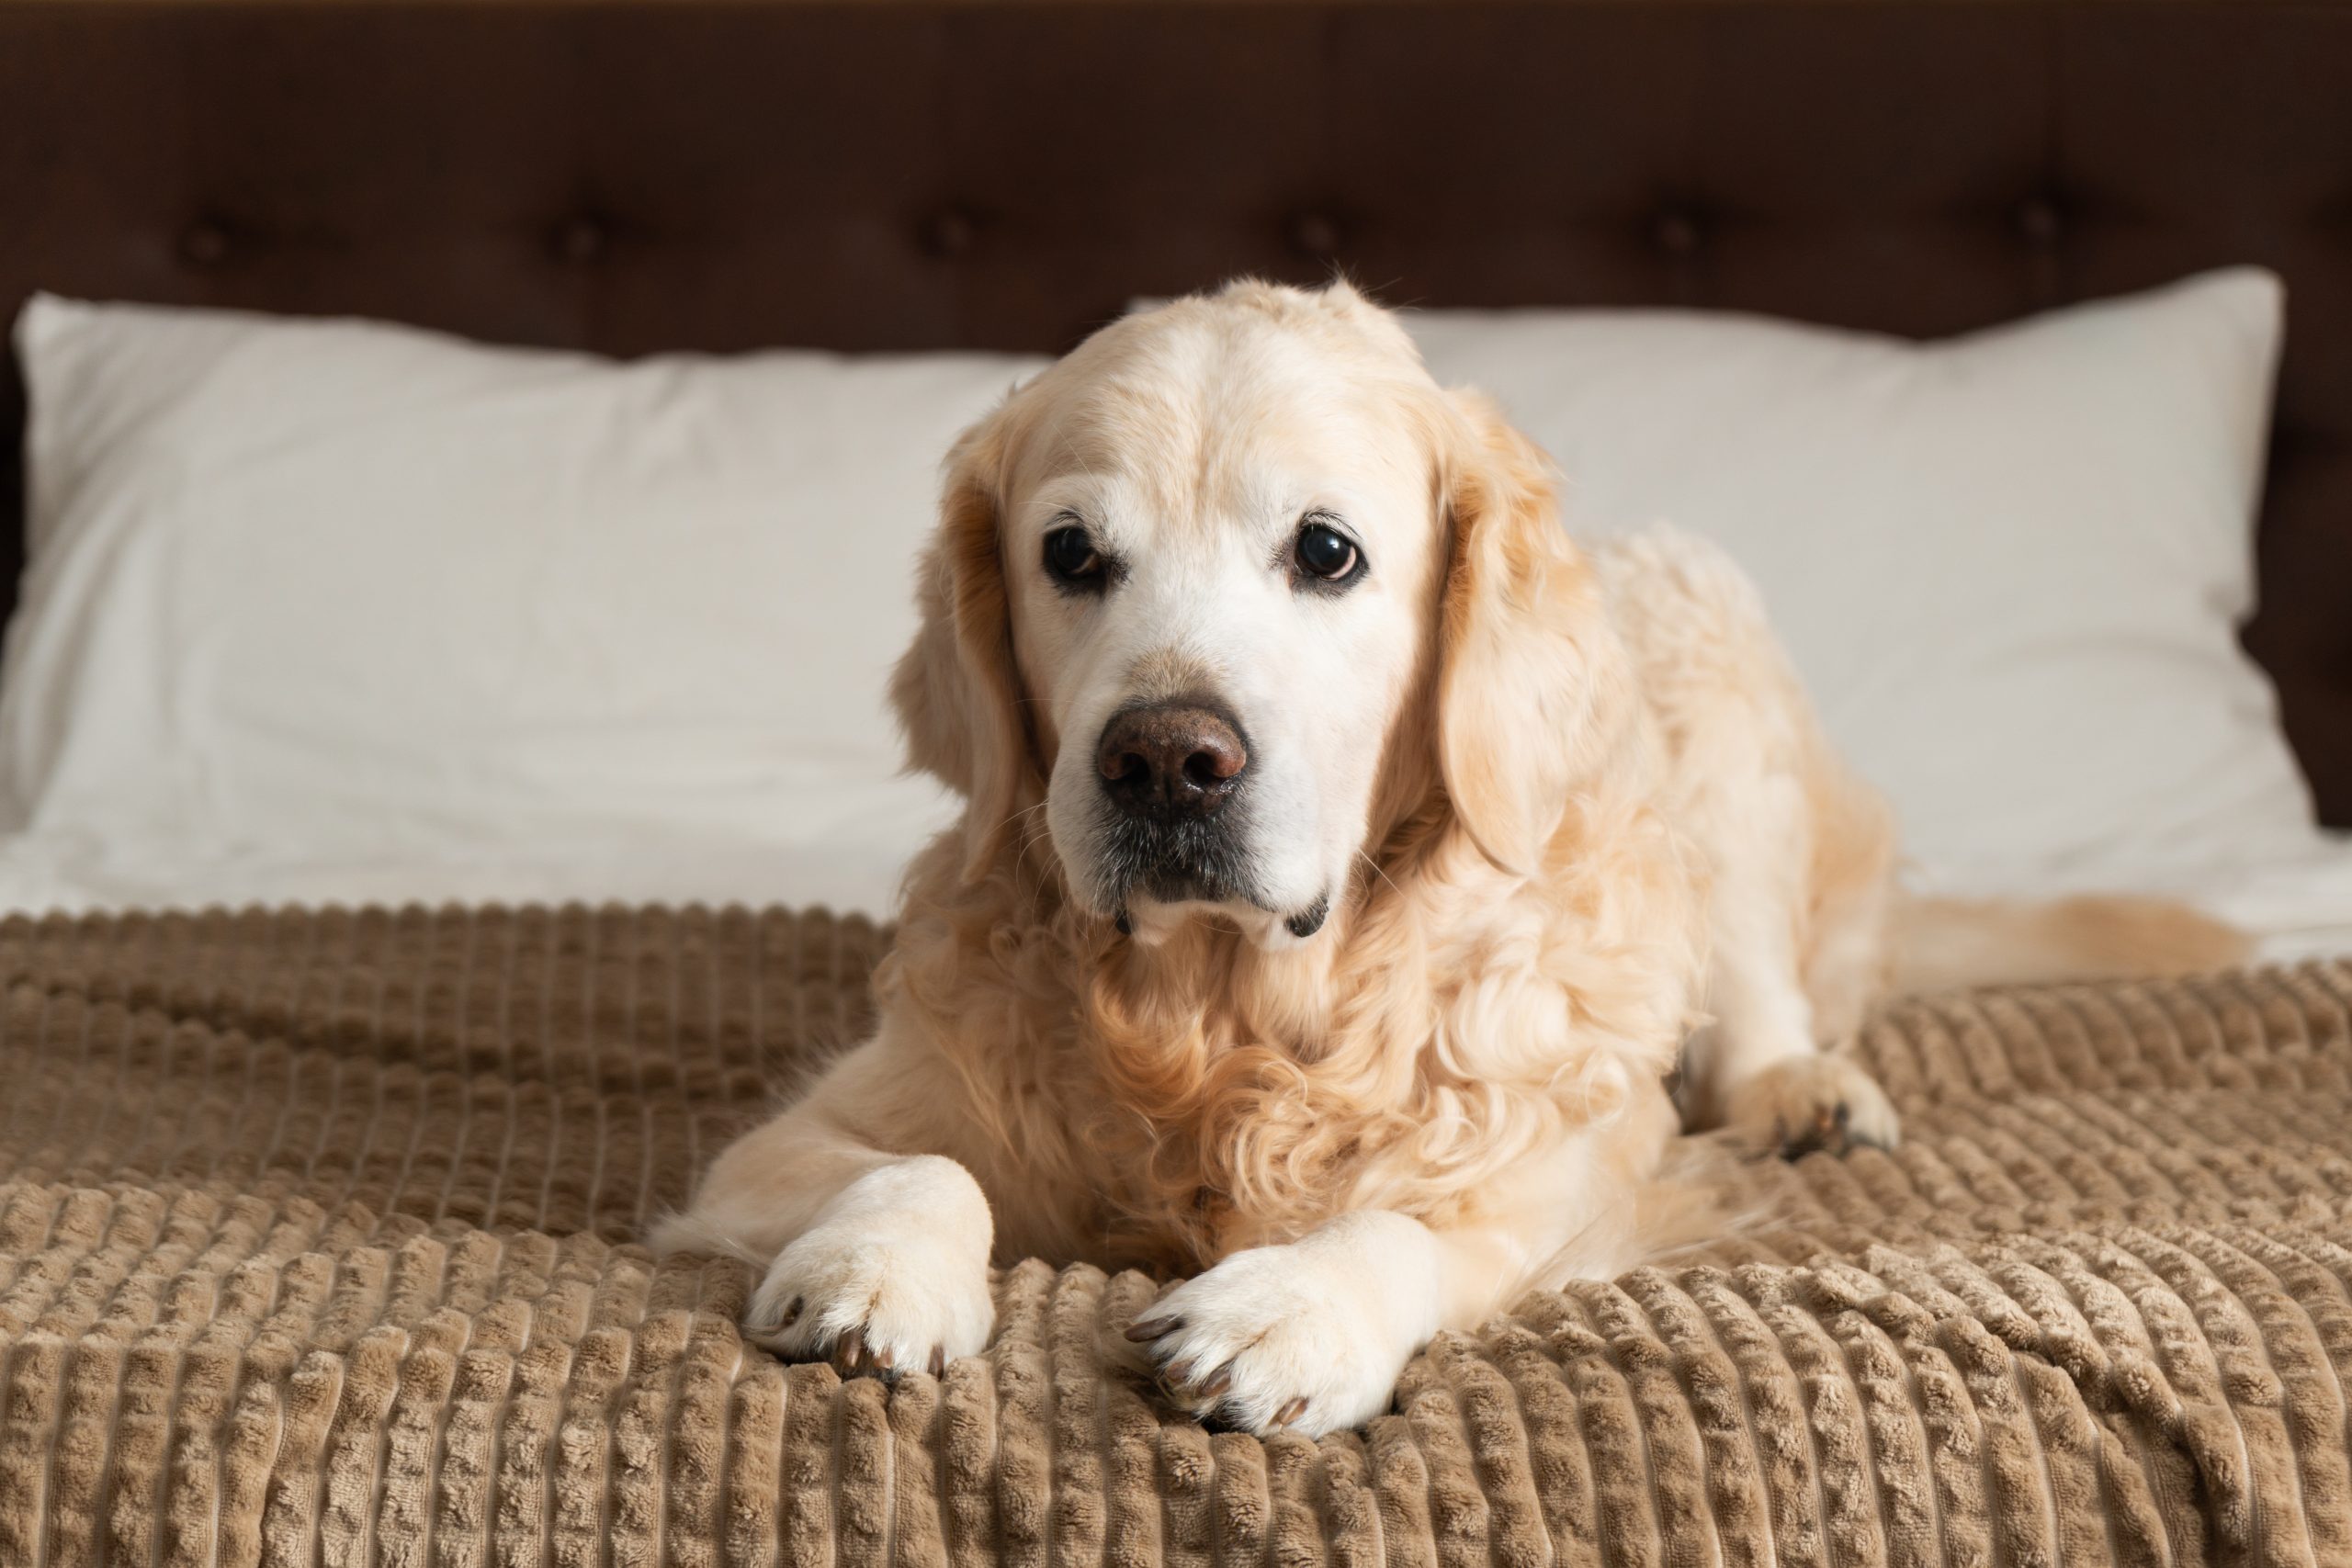 Ein Golden Retriever Hund mit blondem, lockigen Fell liegt auf einem Bett und schaut skeptisch.